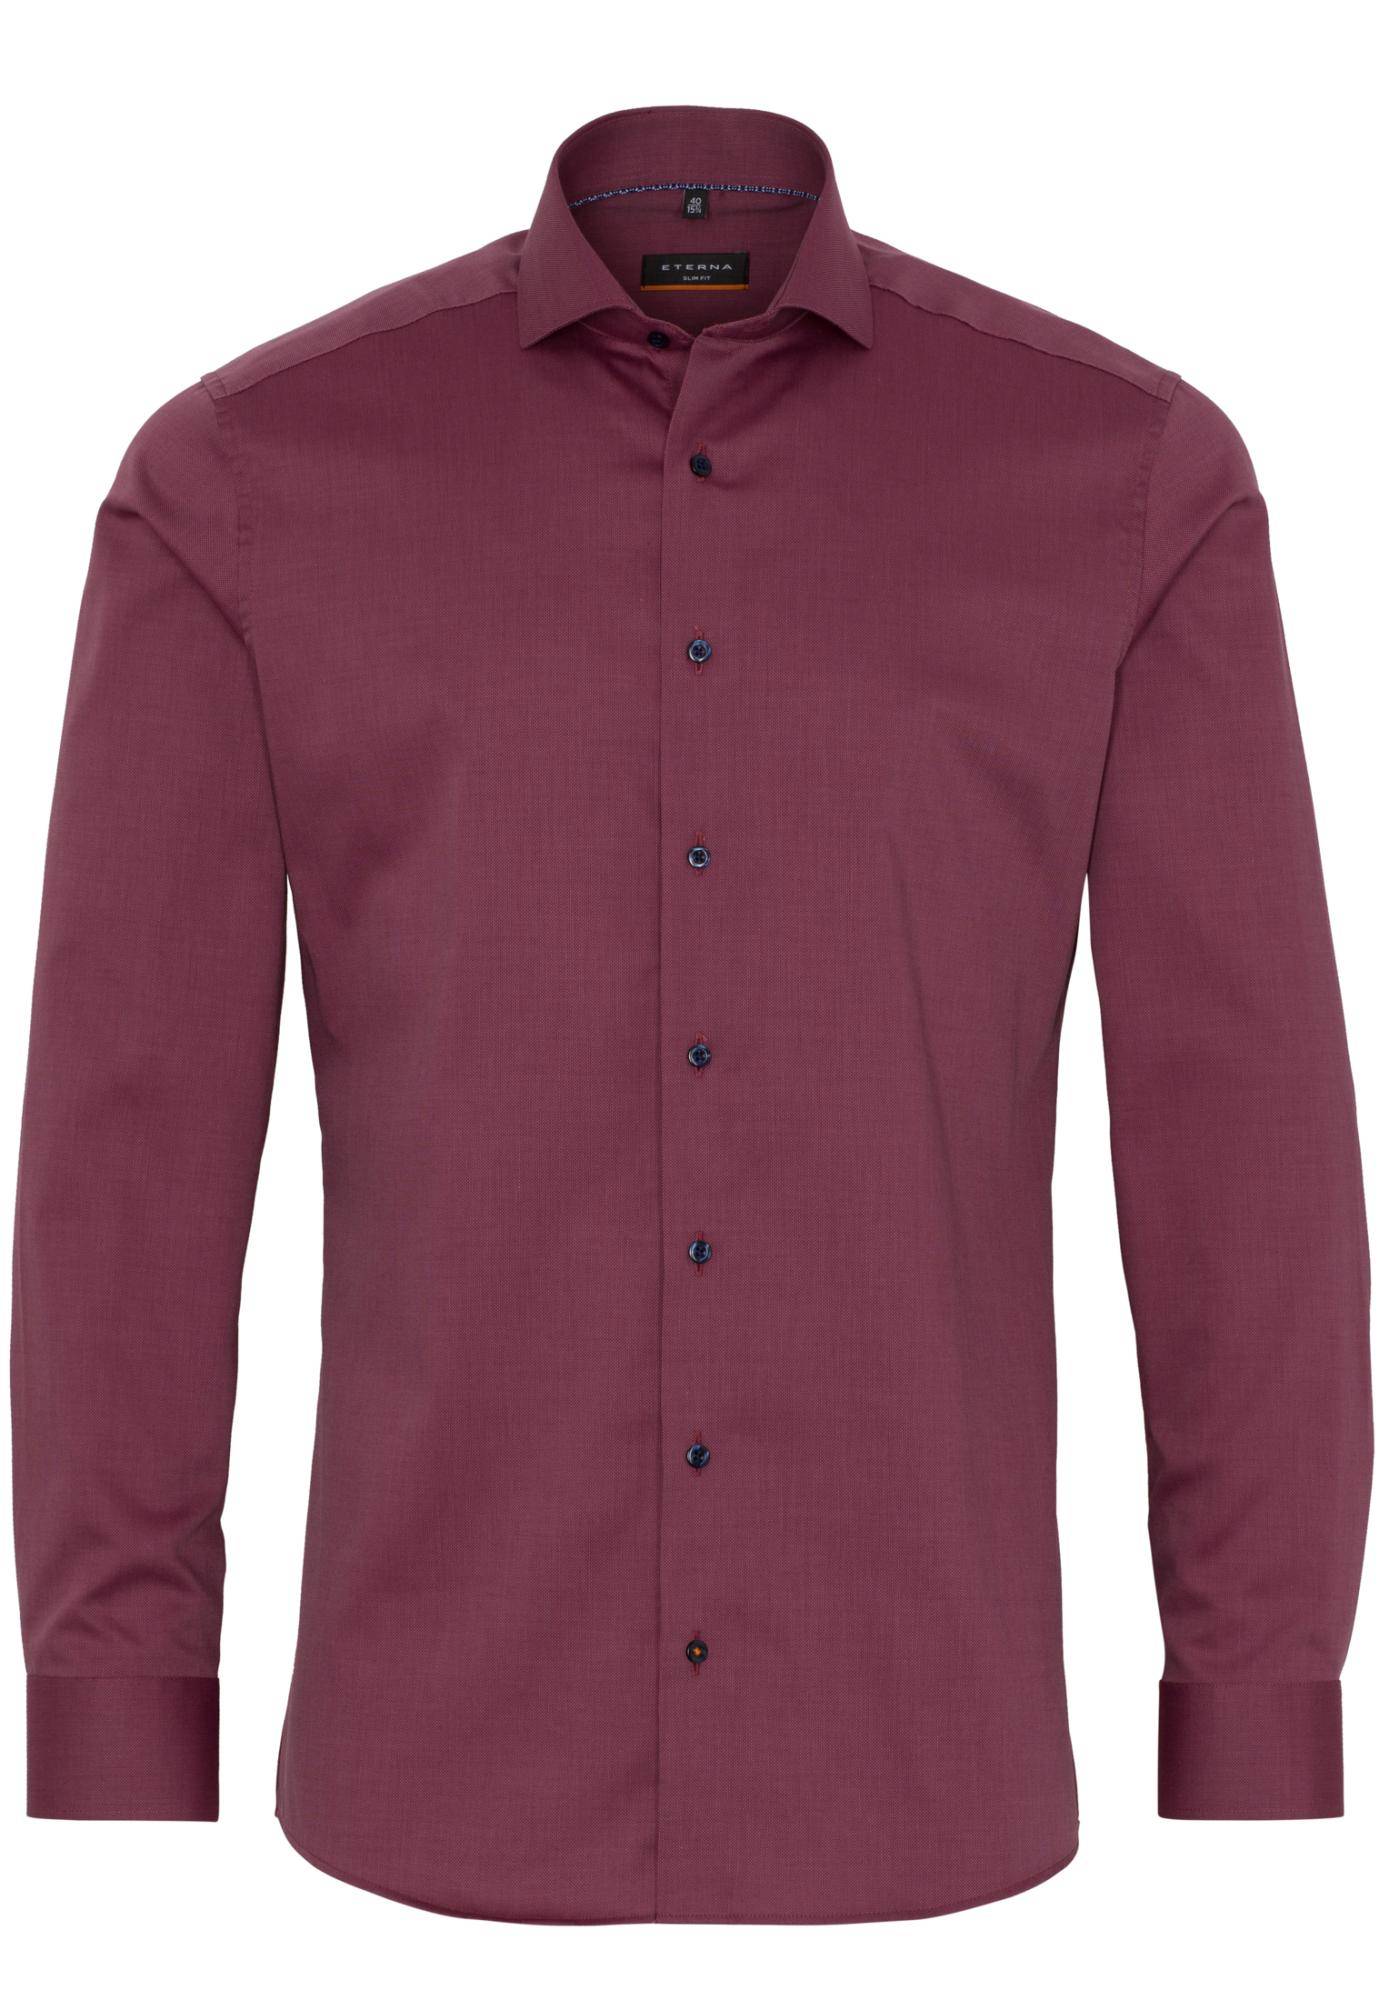 Мужская рубашка ETERNA, бордовая, цвет бордовый, размер 46 - фото 1